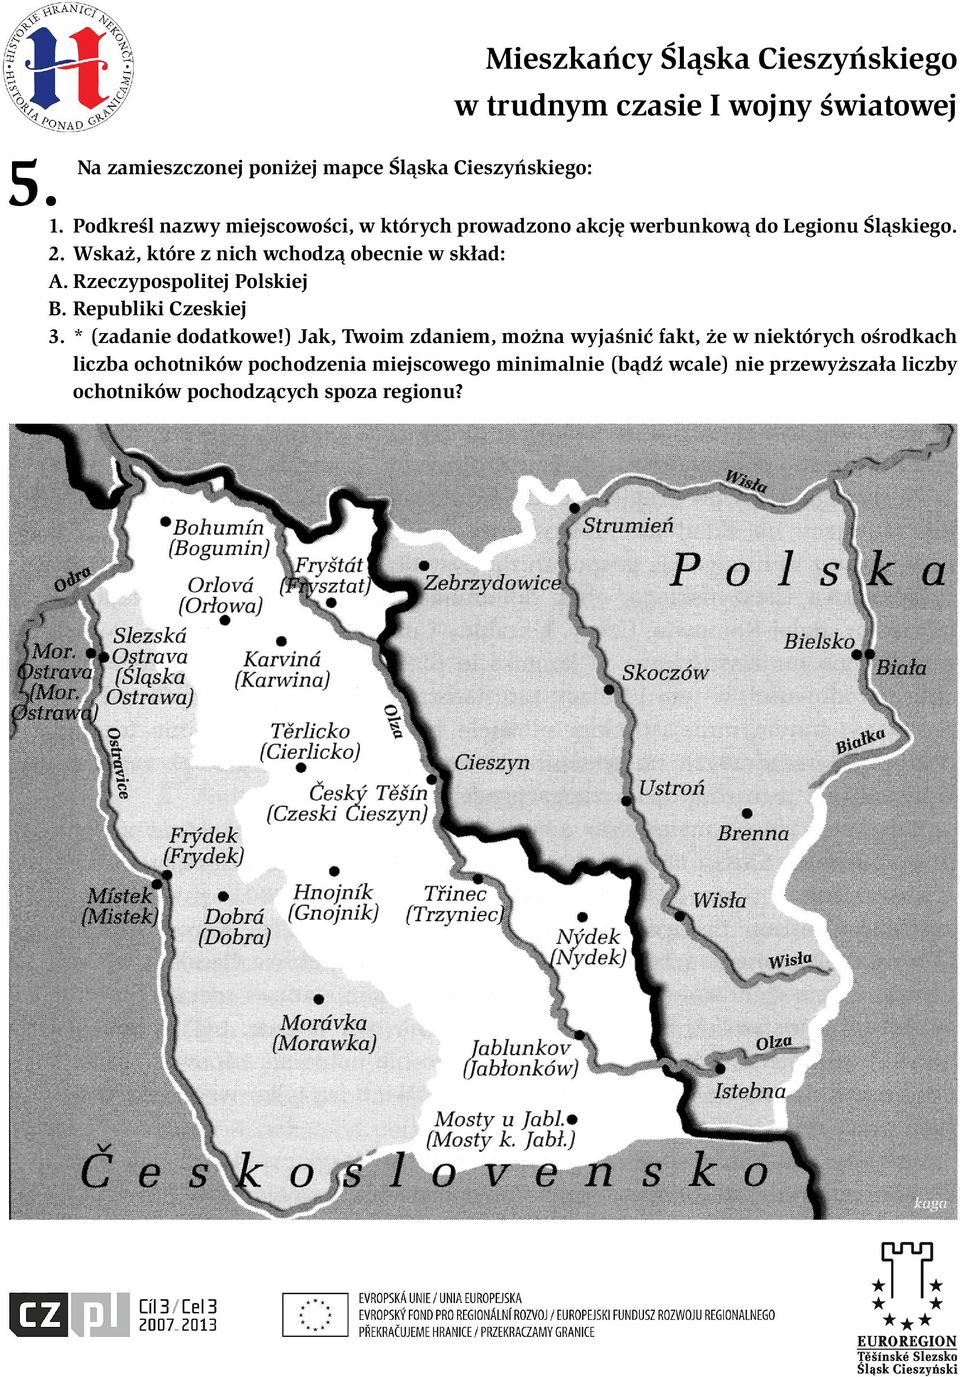 Wskaż, które z nich wchodzą obecnie w skład: A. Rzeczypospolitej Polskiej B. Republiki Czeskiej 3. * (zadanie dodatkowe!